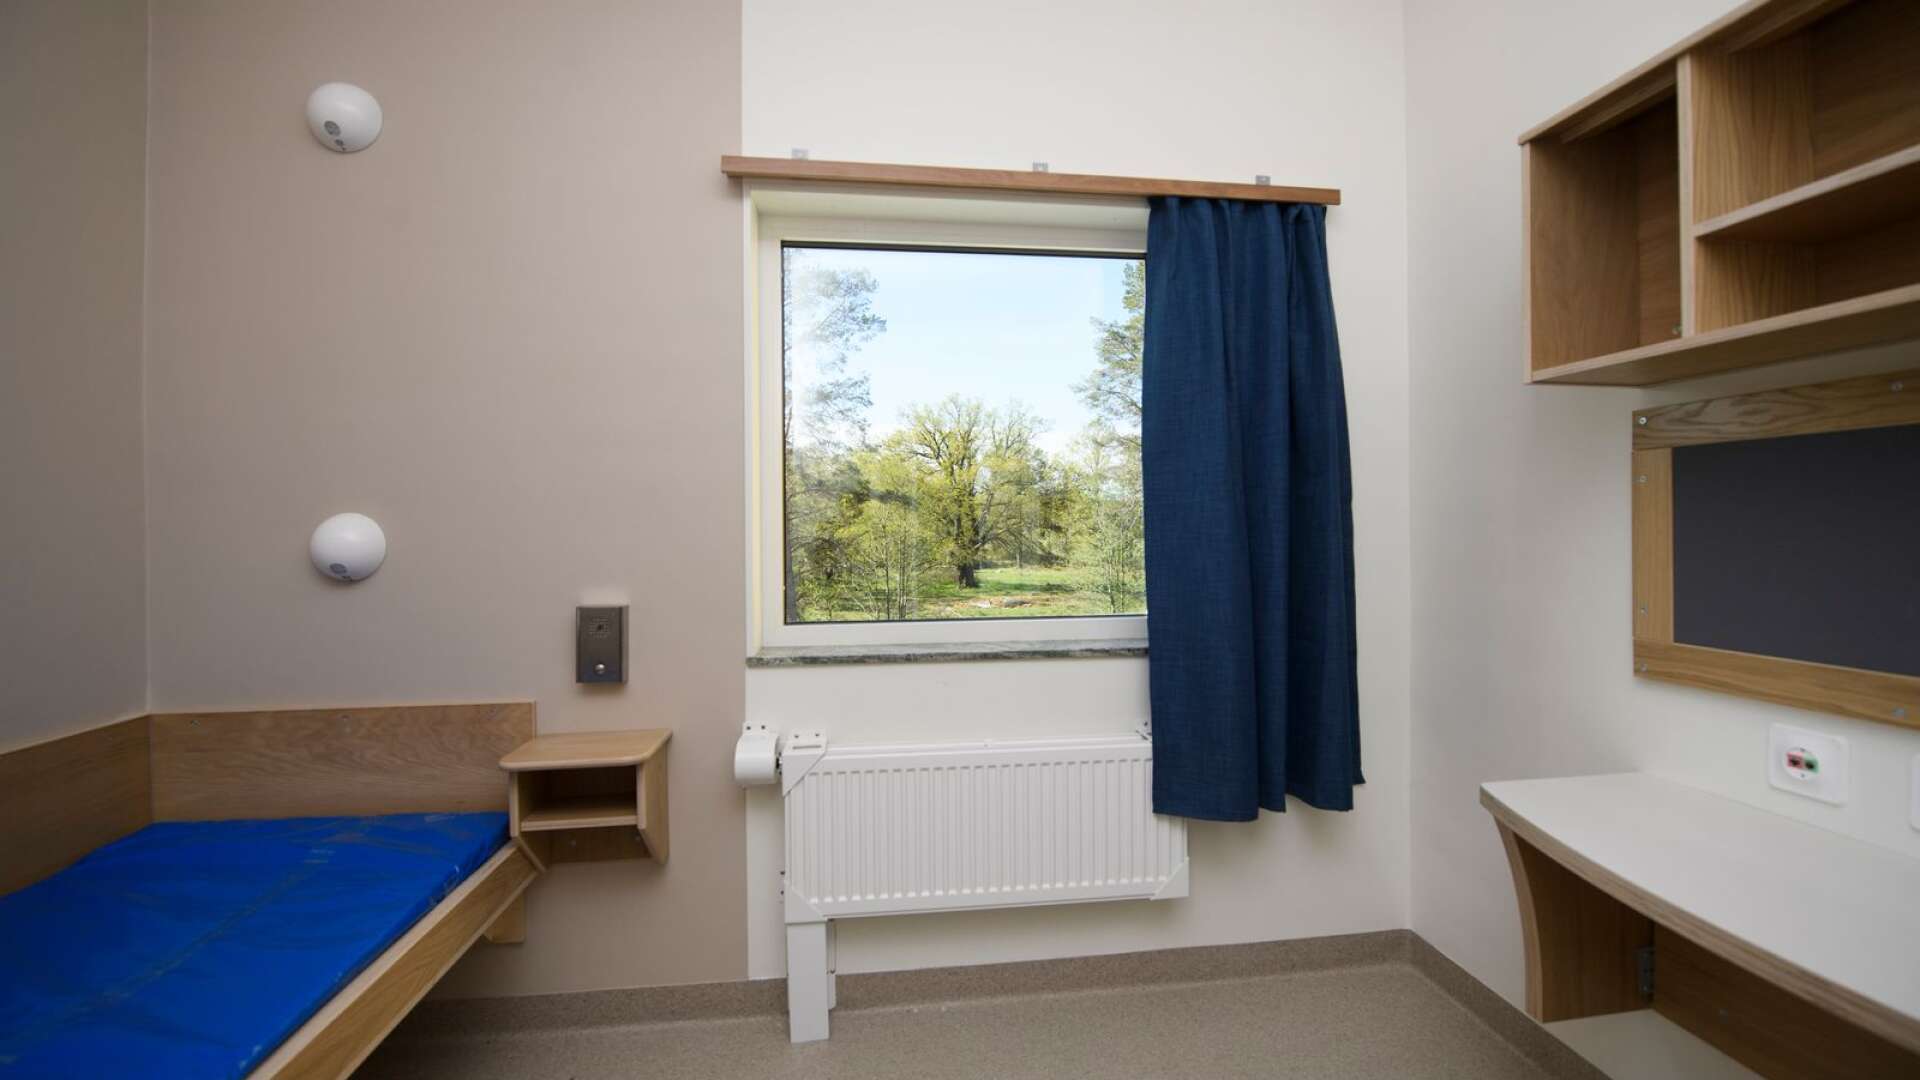 Kriminalvårdens första så kallade typhus, på den öppna klass 3-anstalten Skenäs utanför Norrköping.
